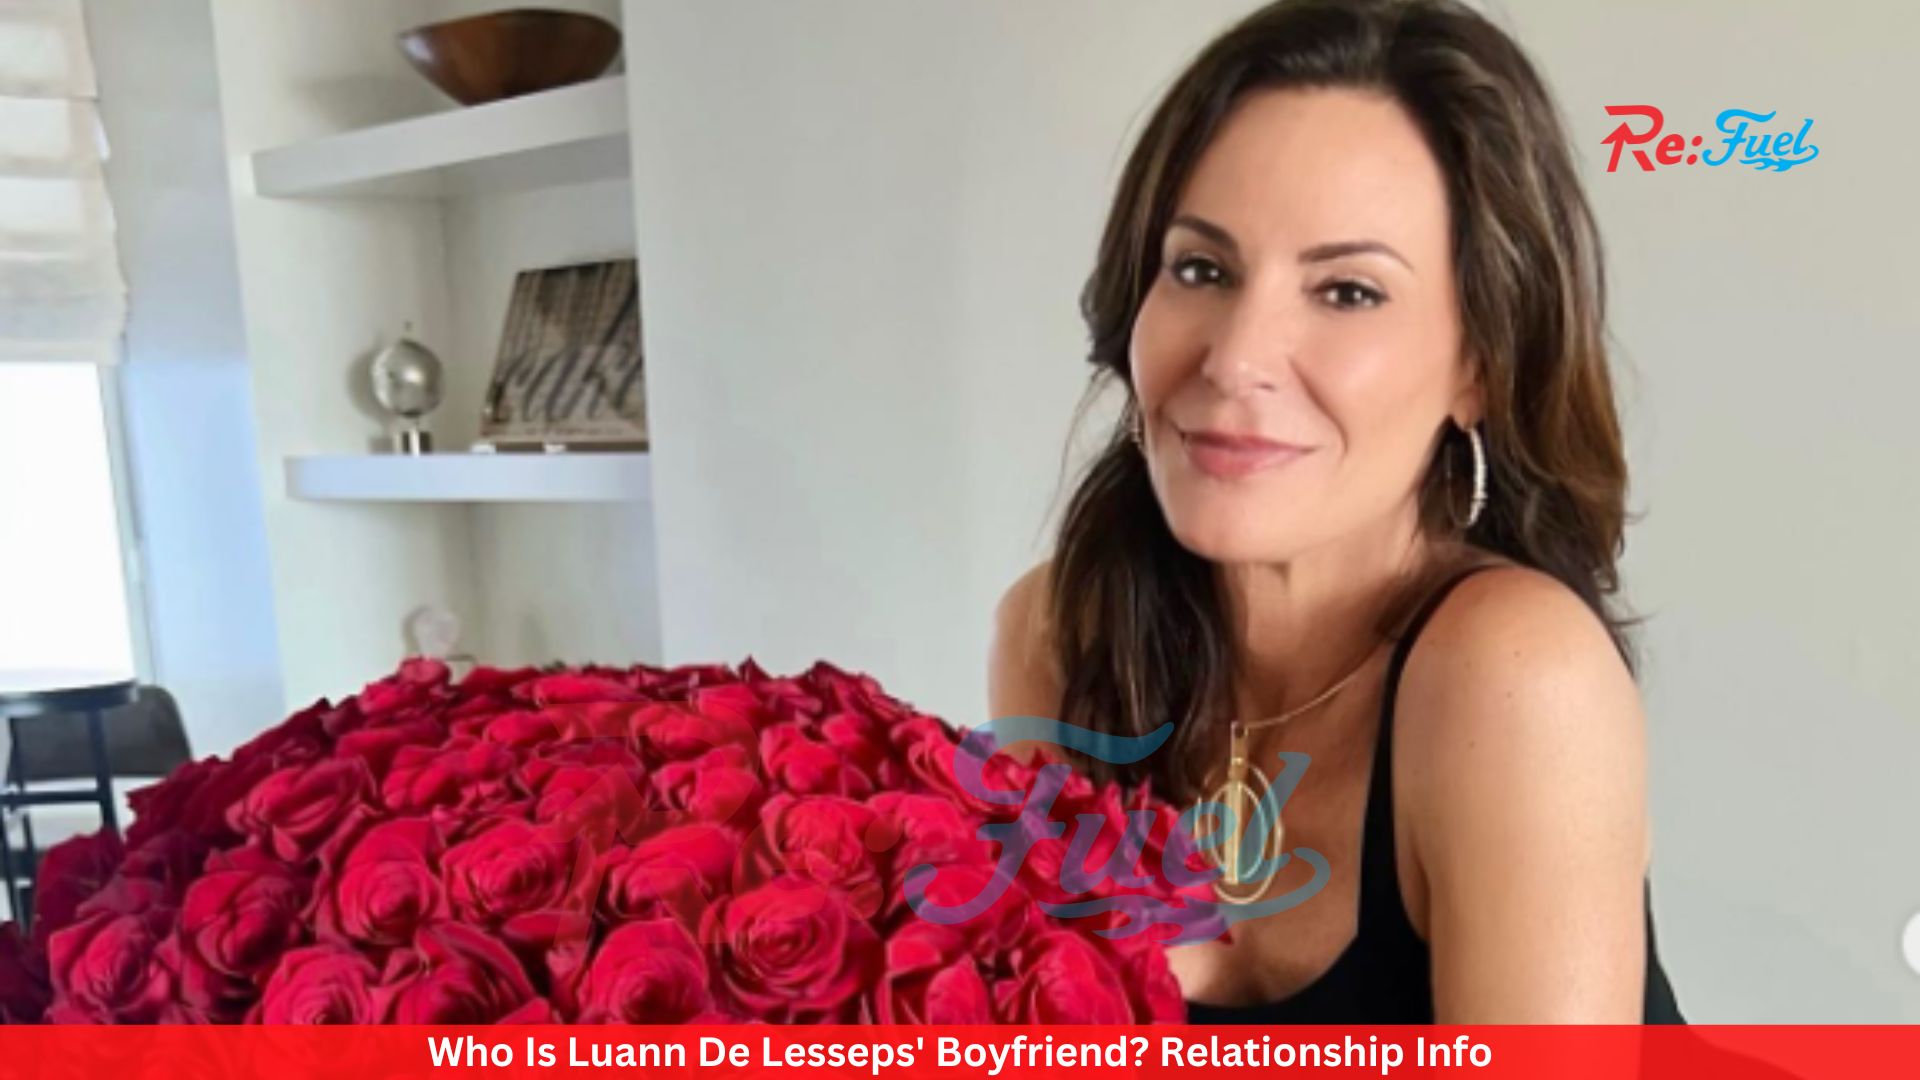 Who Is Luann De Lesseps' Boyfriend? Relationship Info